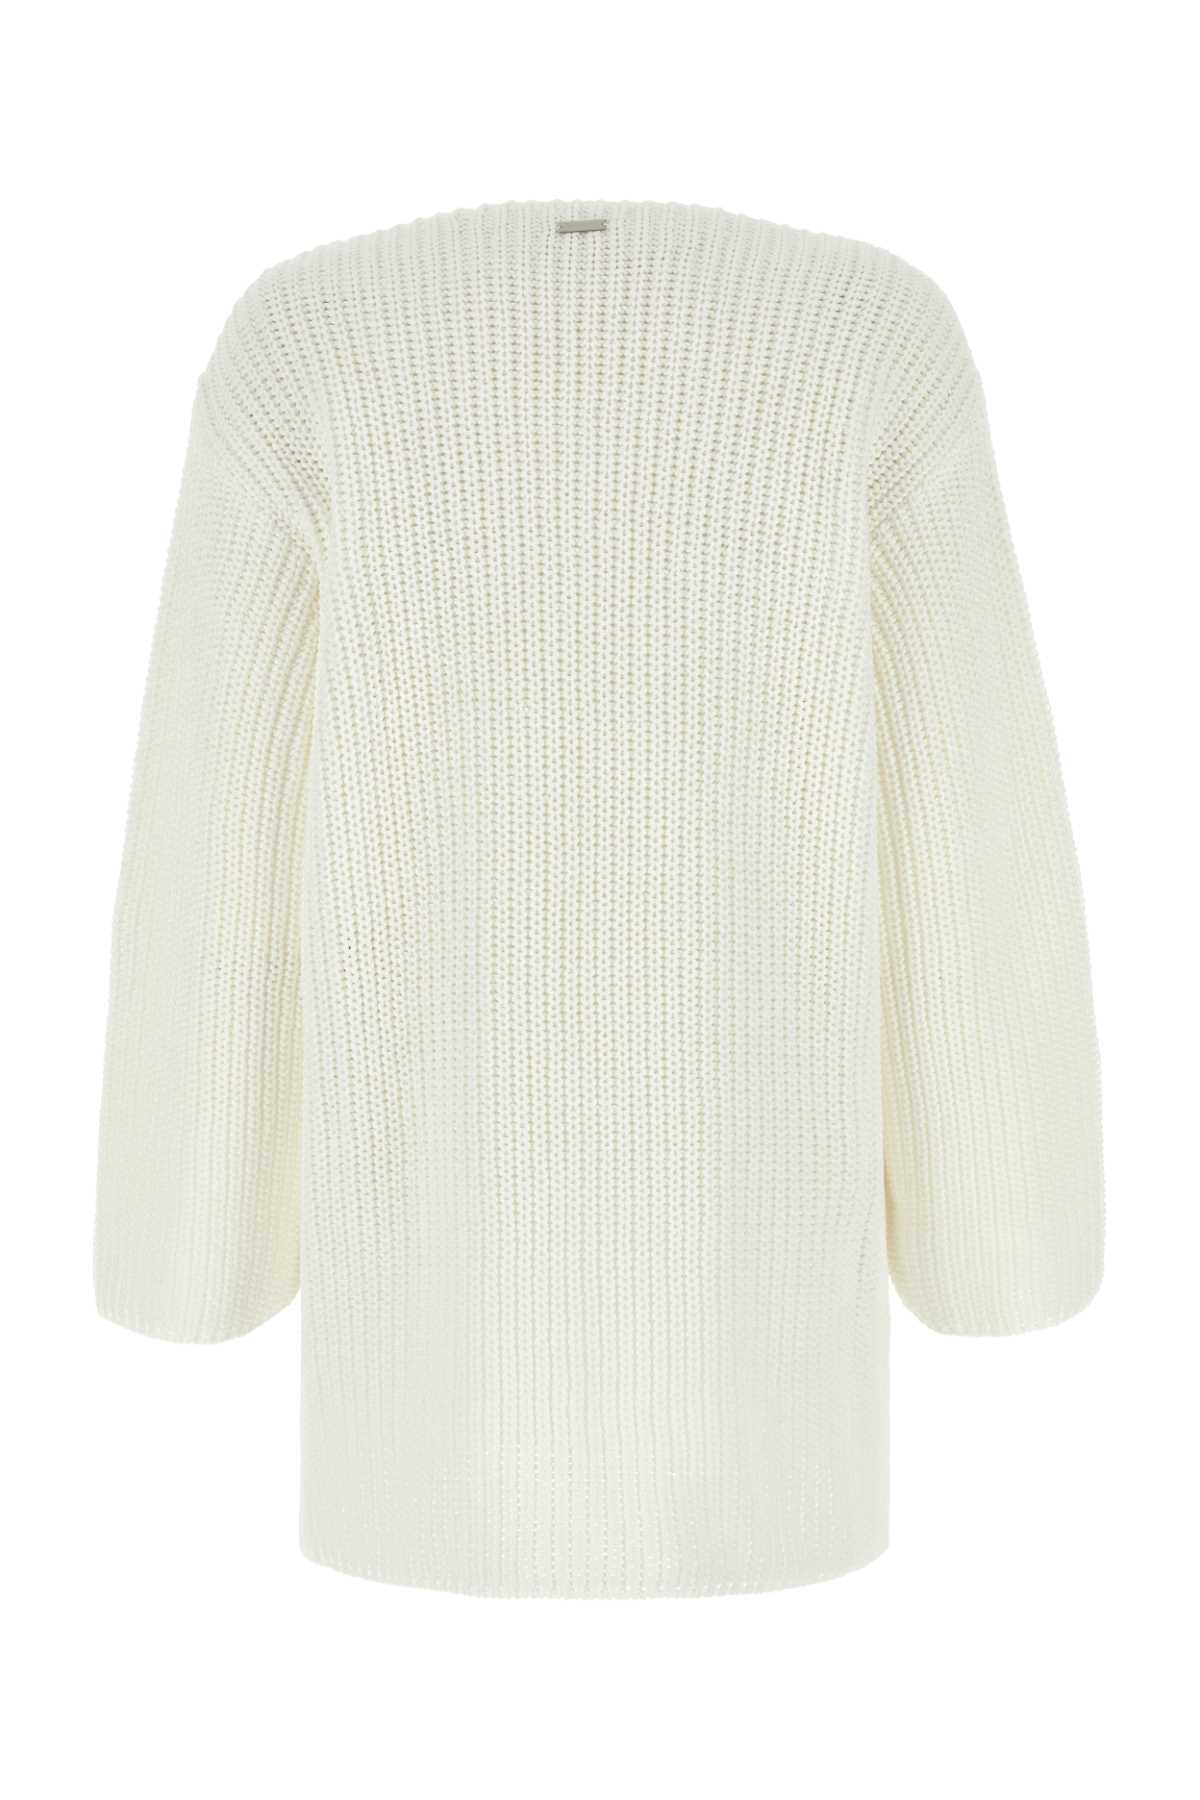 Ferragamo White Cotton Oversize Sweater In Bianco